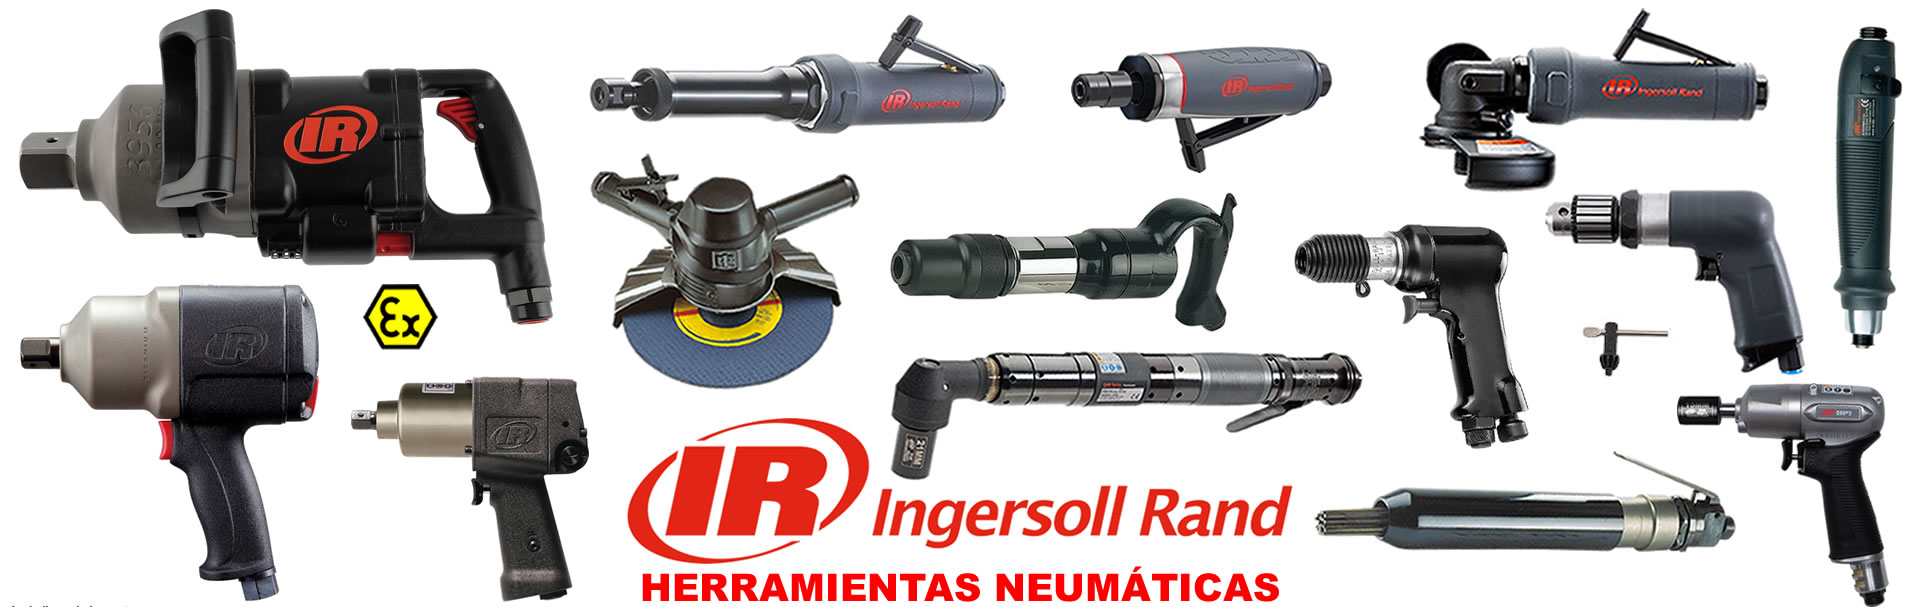 alcaner_ingersoll-rand_soluciones-industria-automación_equipamento_maquinaria_servicio-tecnico_distribuidor-oficial-ingersoll-rand_madrid-espana_banner-2-ir-herramientas